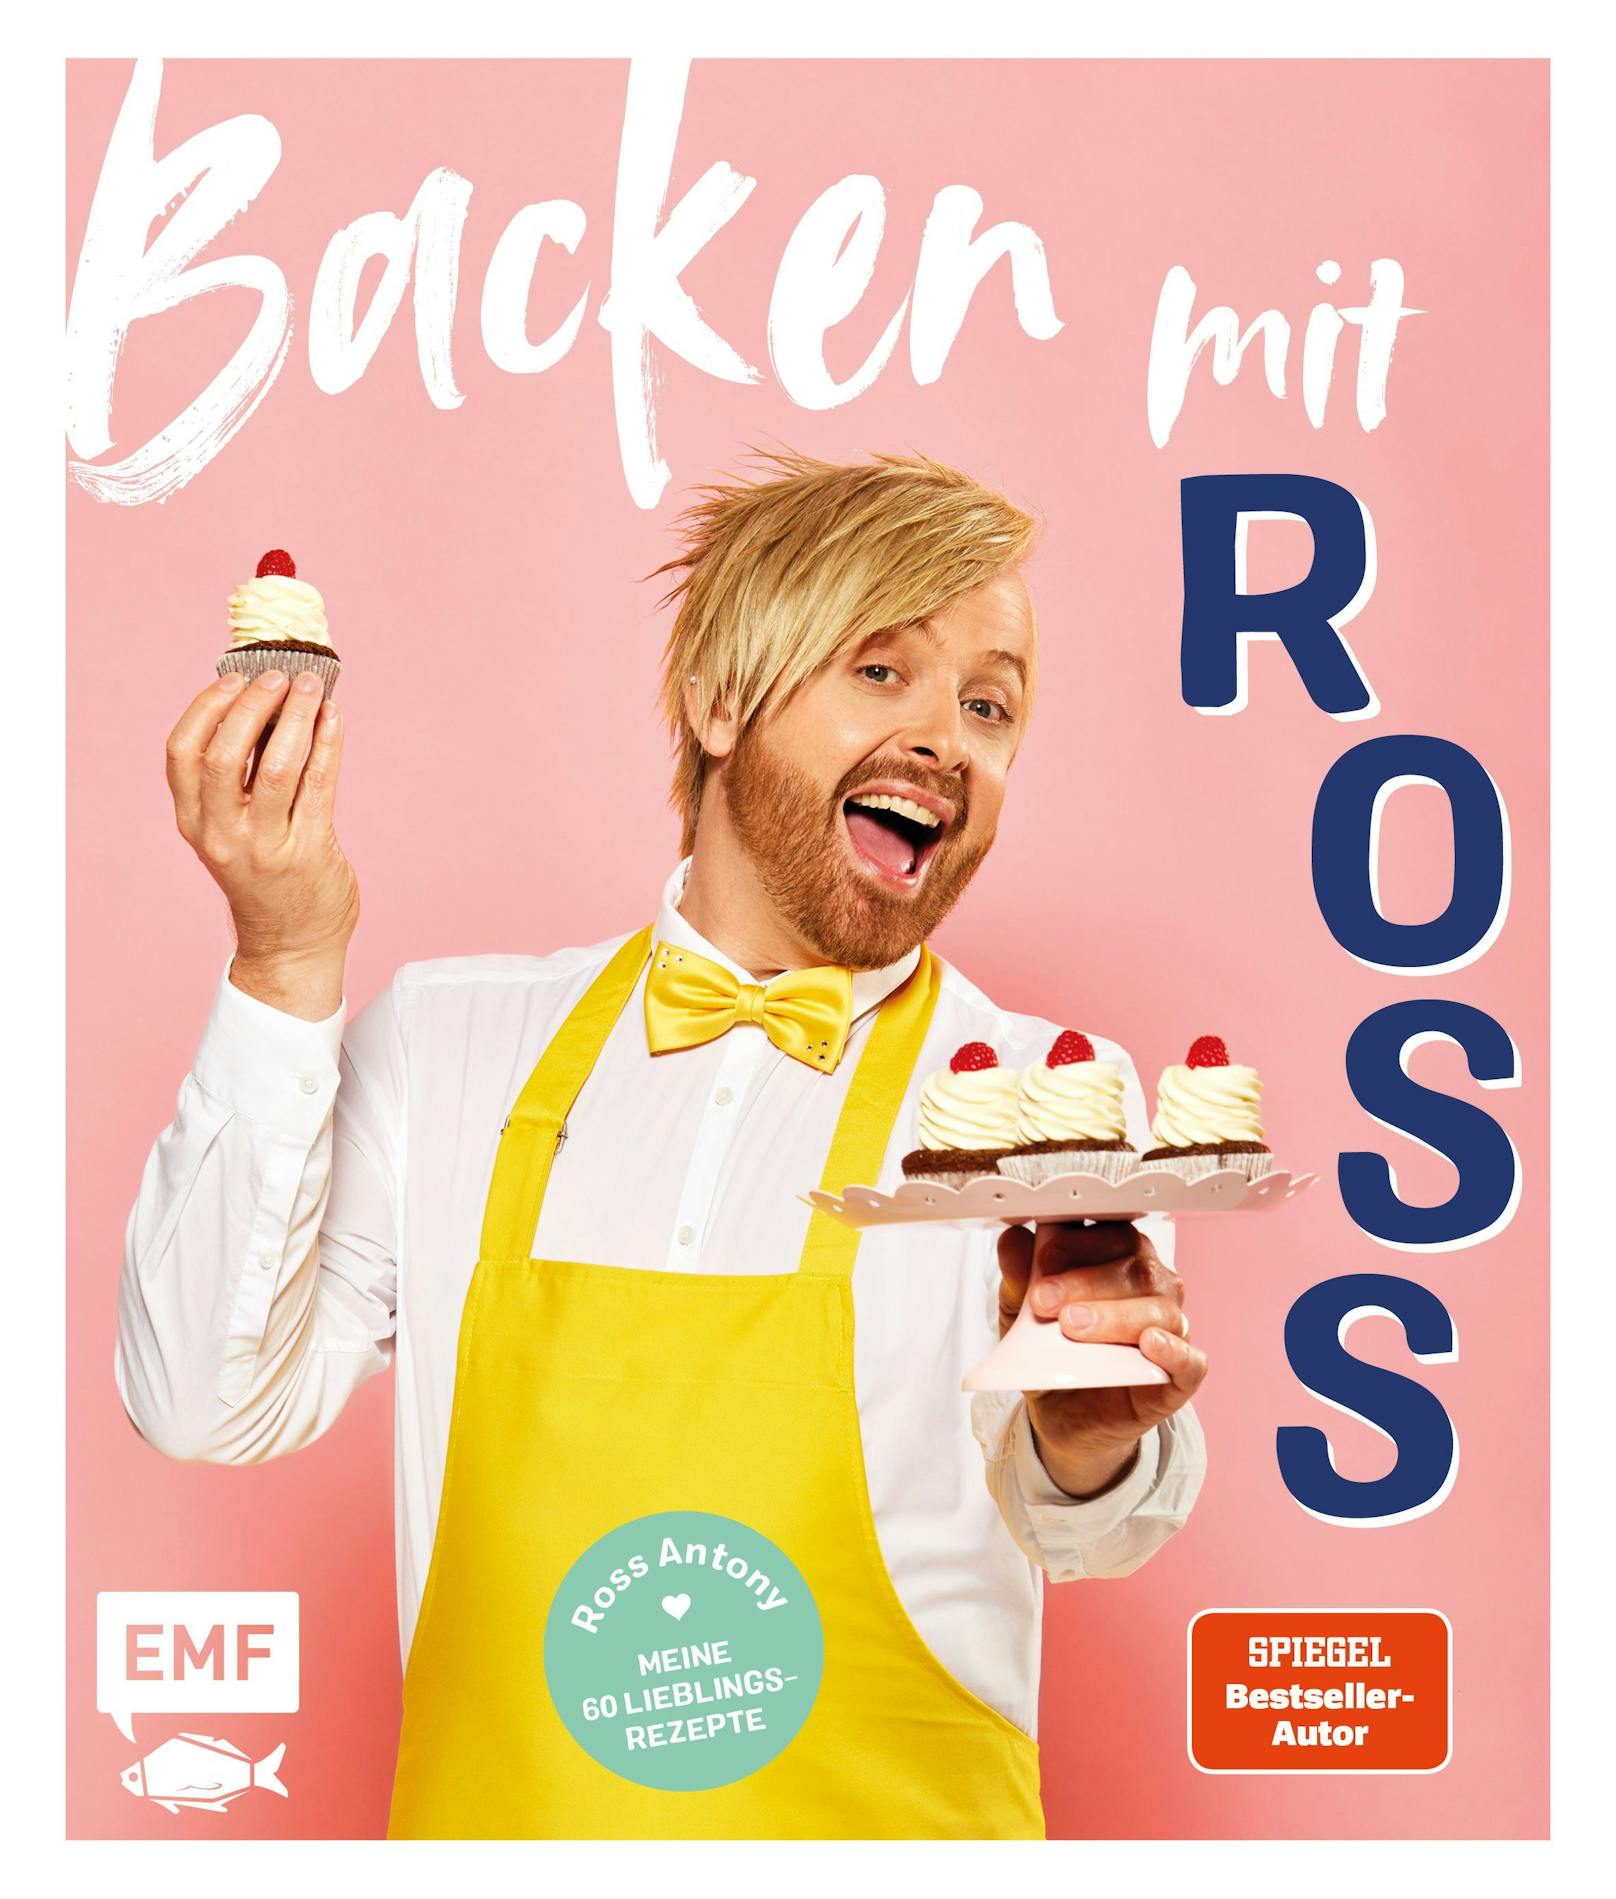 Das Buch "Backen mit Ross" ist im EMF-Verlag erschienen und in jedem gut sortierten Buchhandel erhältlich.